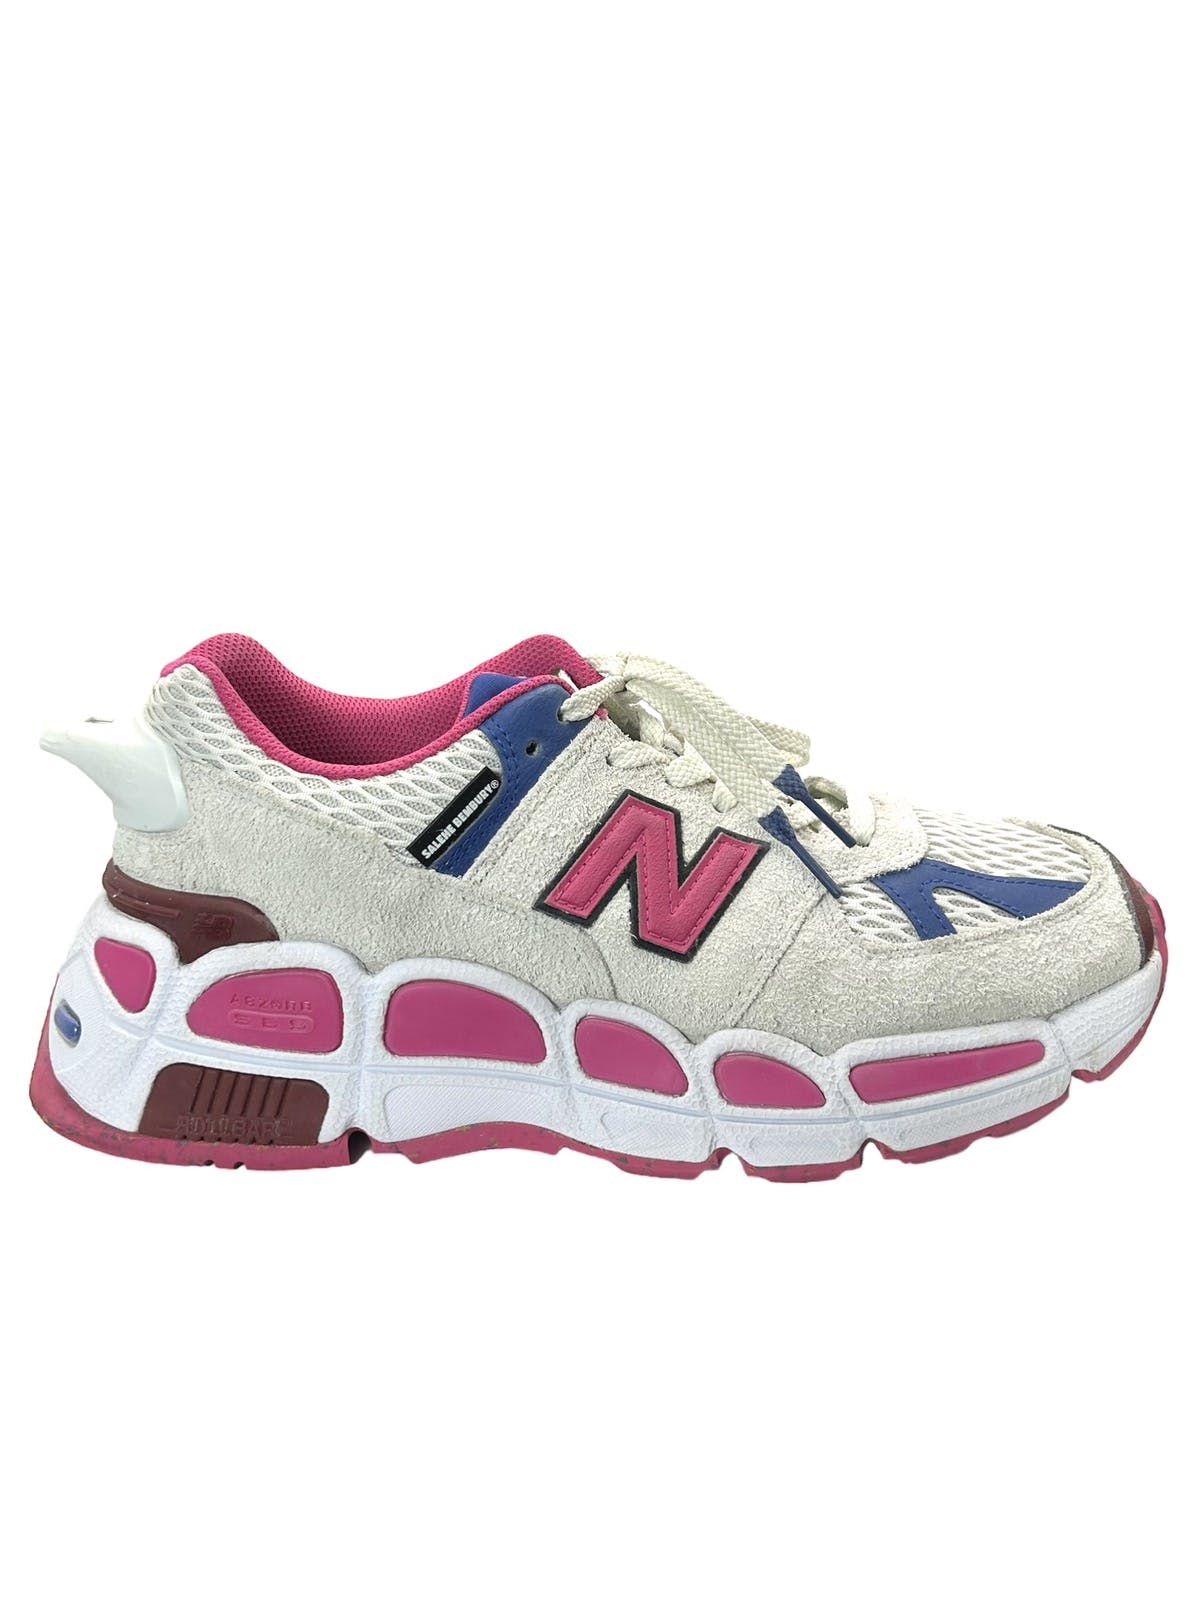 NB 574 “Yurt” Chunky Sneakers - 1